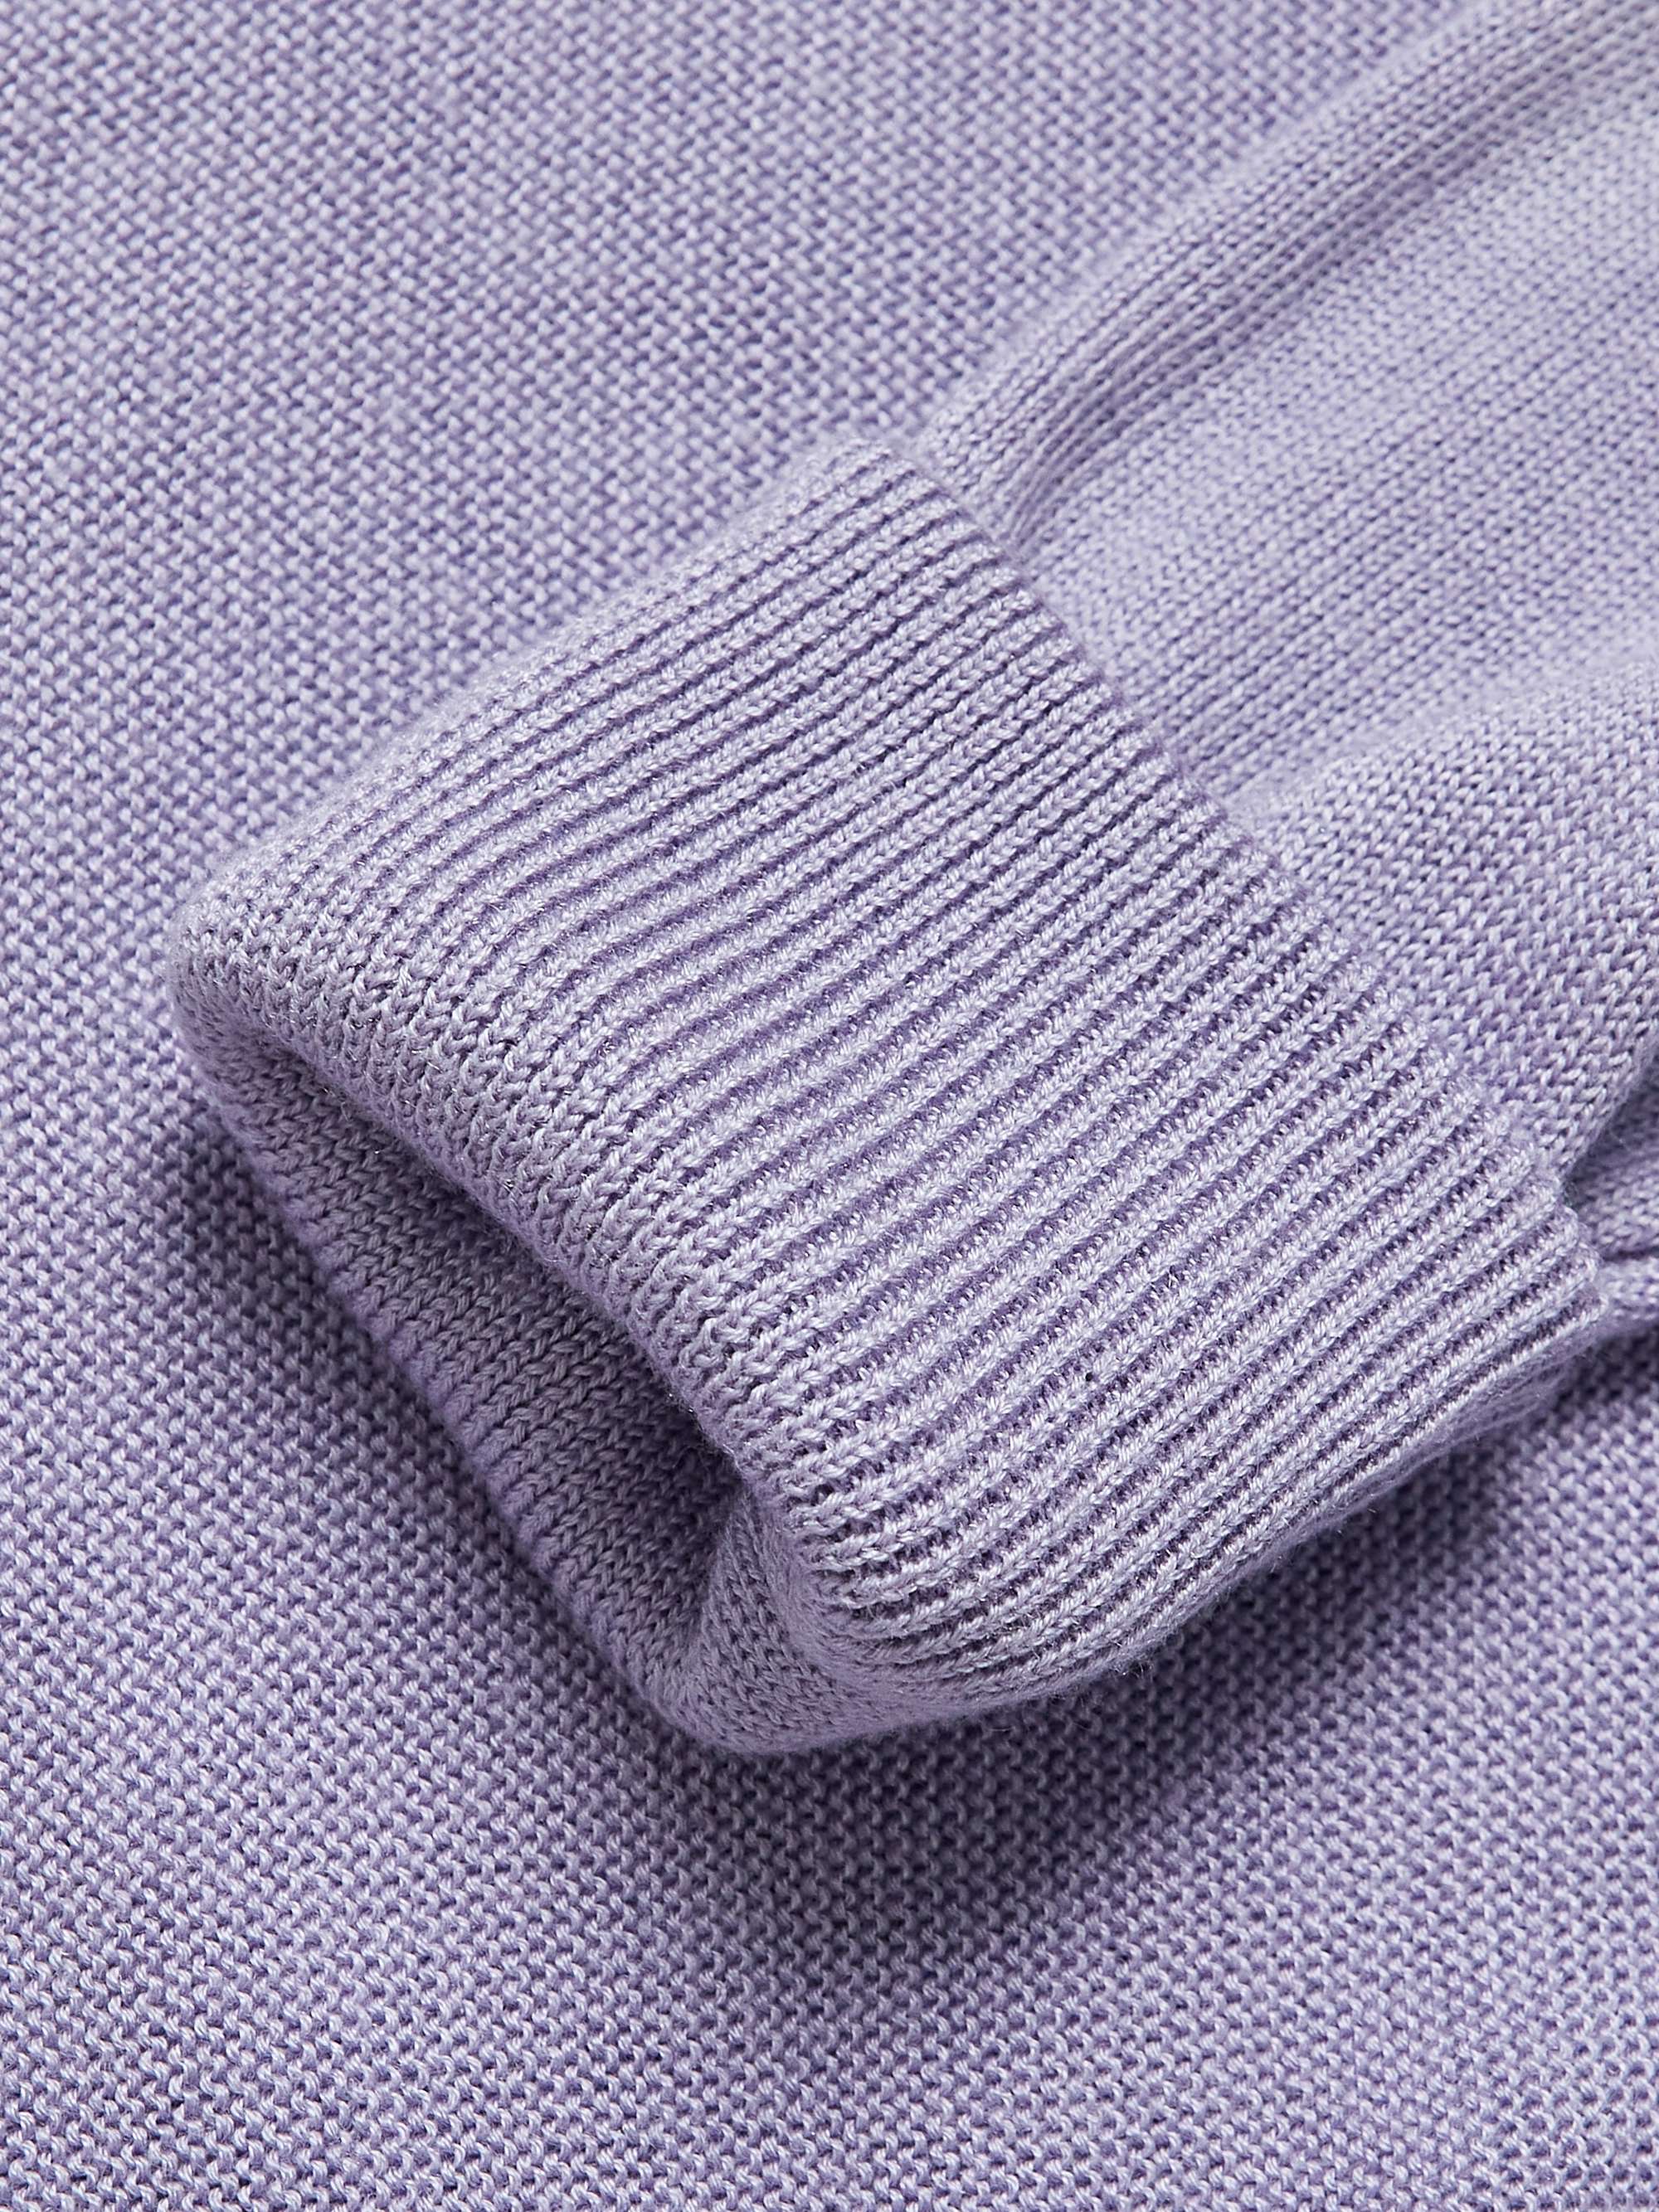 KAPITAL Intarsia Knitted Cardigan for Men | MR PORTER